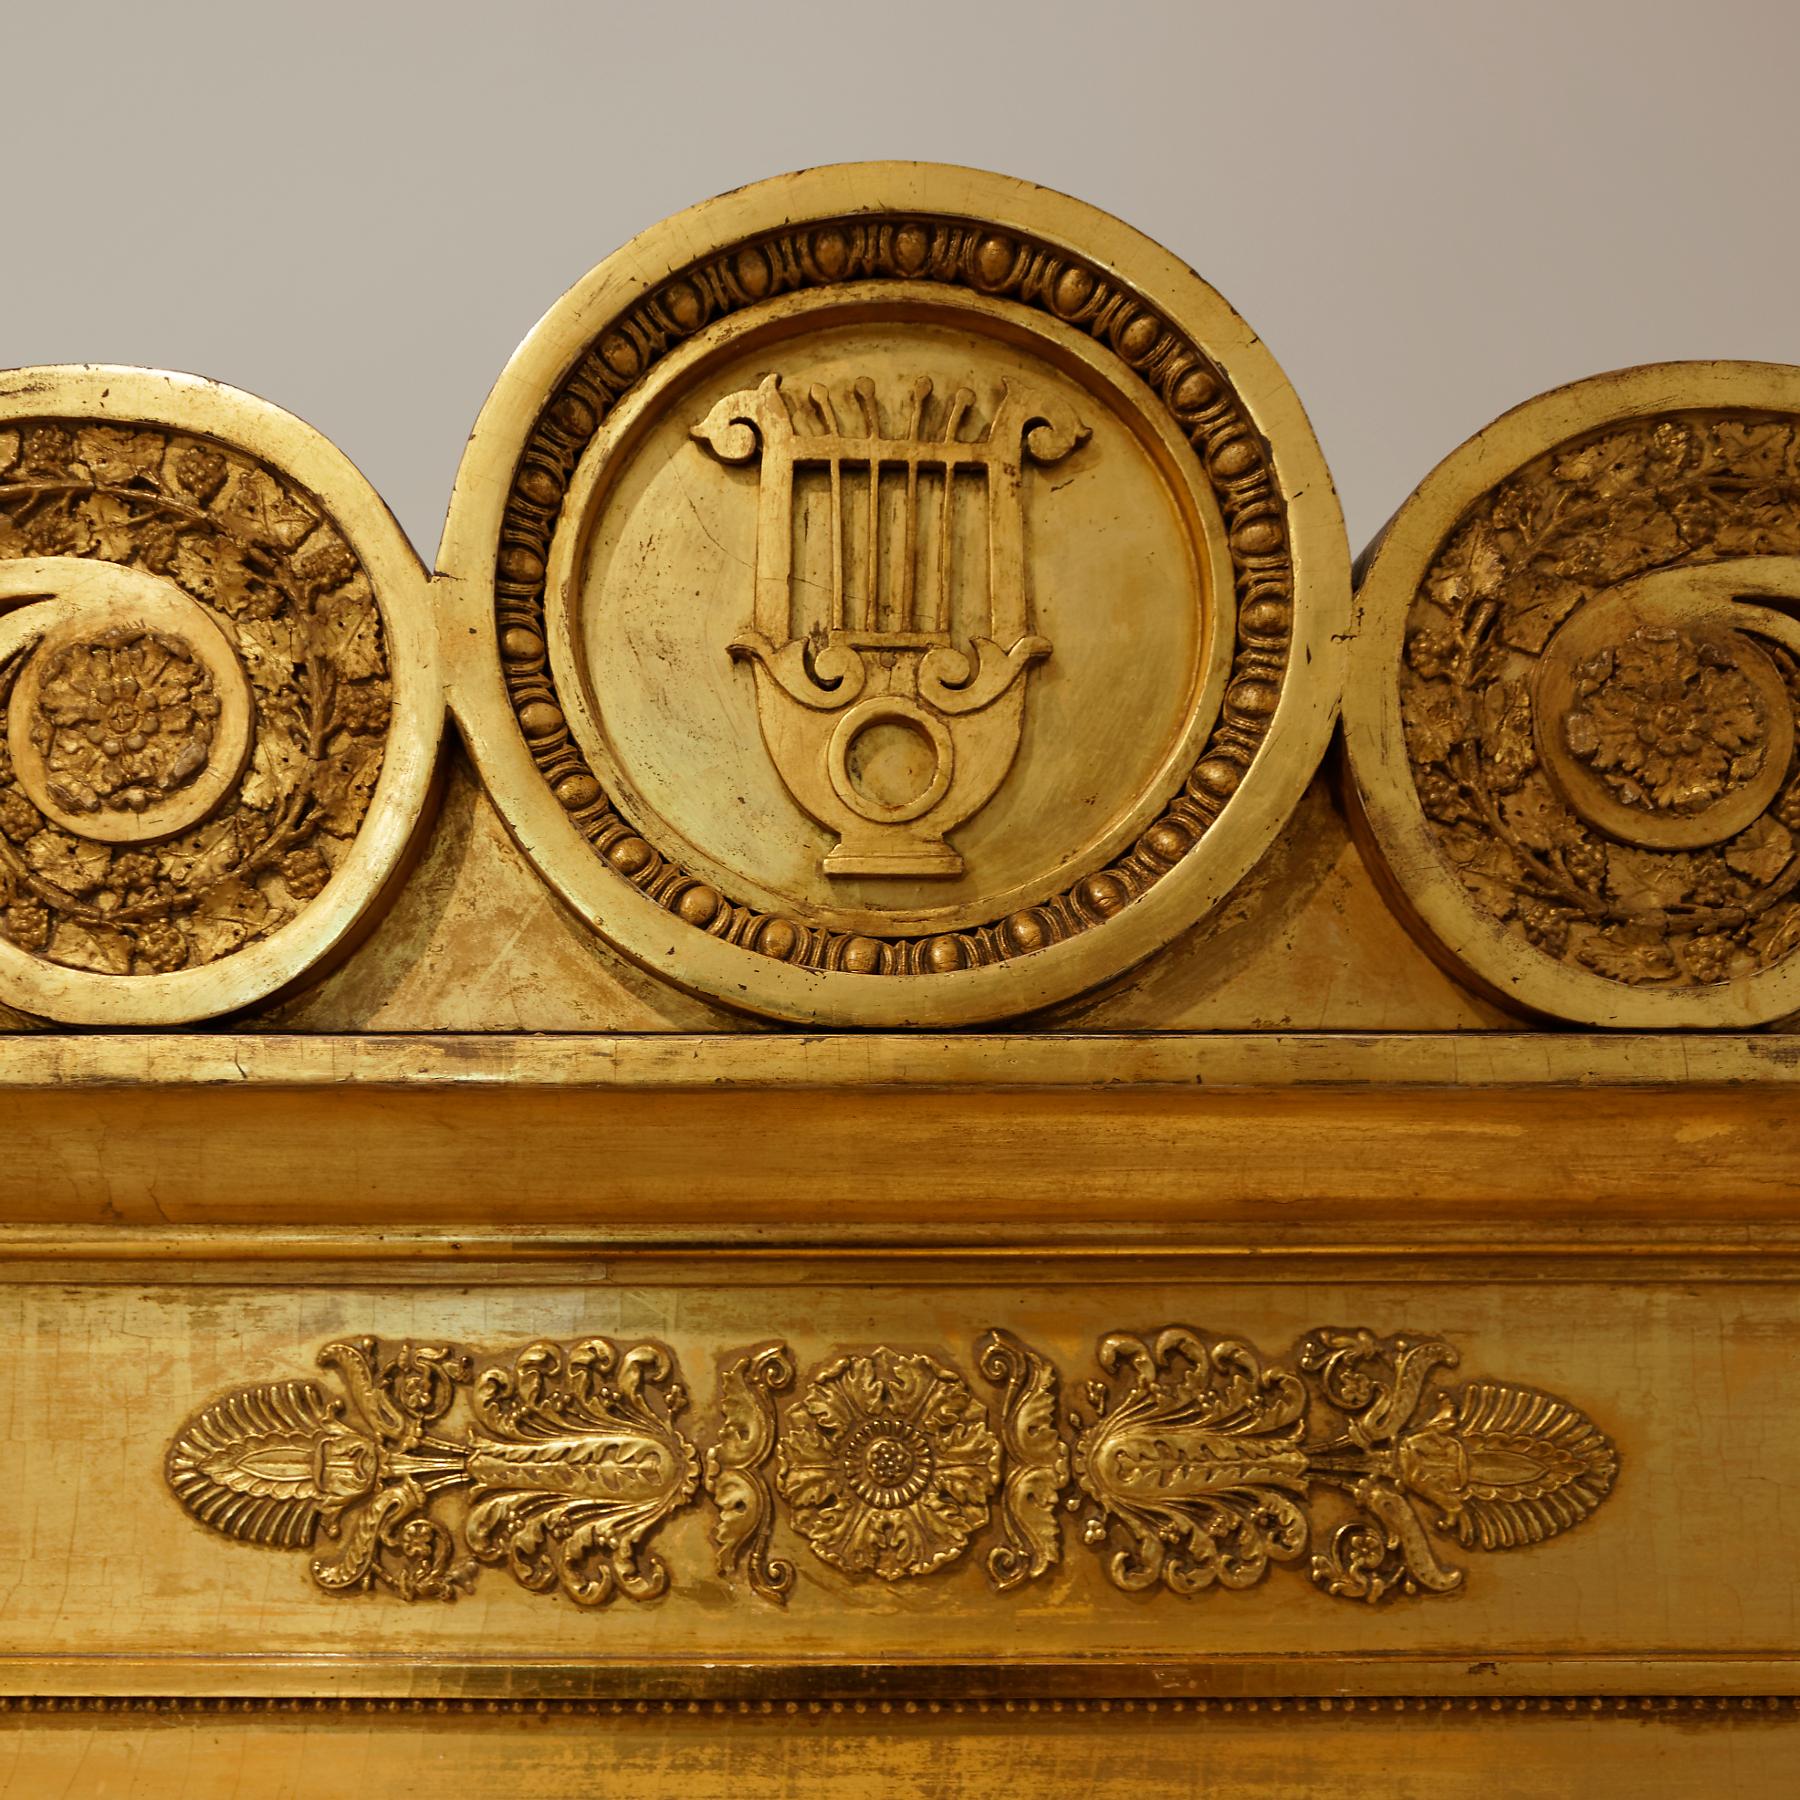 Un rare miroir trumeau Empire allemand du début du 19e siècle en bois doré. La grande plaque rectangulaire est surmontée d'un fronton à volutes enrichi de feuilles de vigne et d'un médaillon central renfermant une lyre classique. Les côtés du miroir